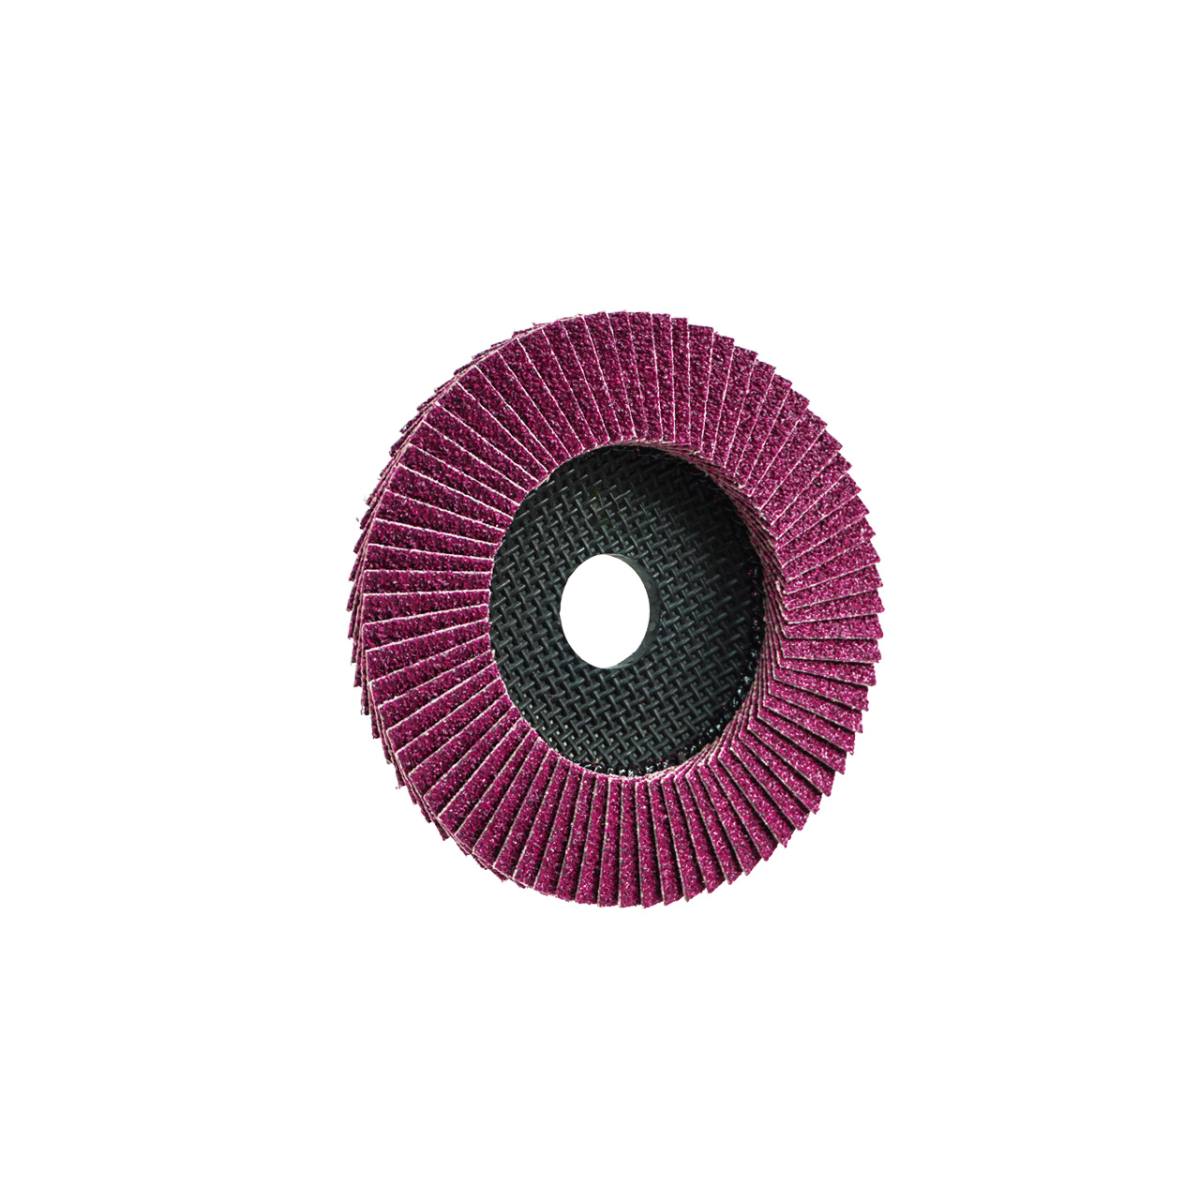 TRIMFIX BLACK MAMBA, 115 mm x 22.2 mm, grit 60, flap disc